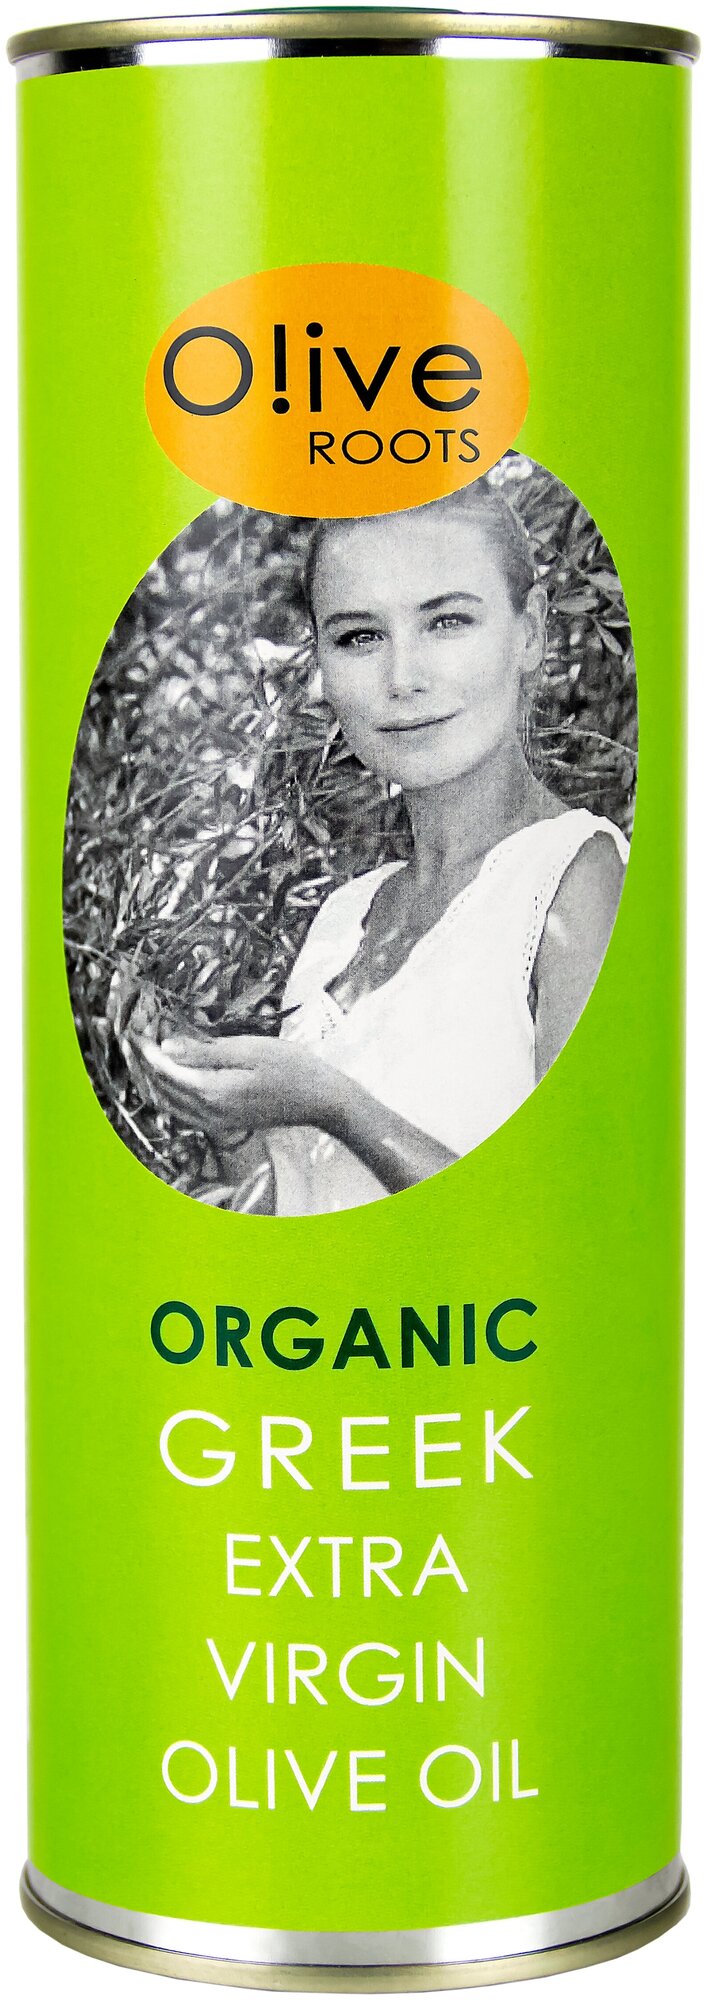 Масло оливковое Olive ROOTS BIO Organic нерафинированное высшего сорта первого холодного отжима Экстра Вирджин органическое БИО, 0,5л